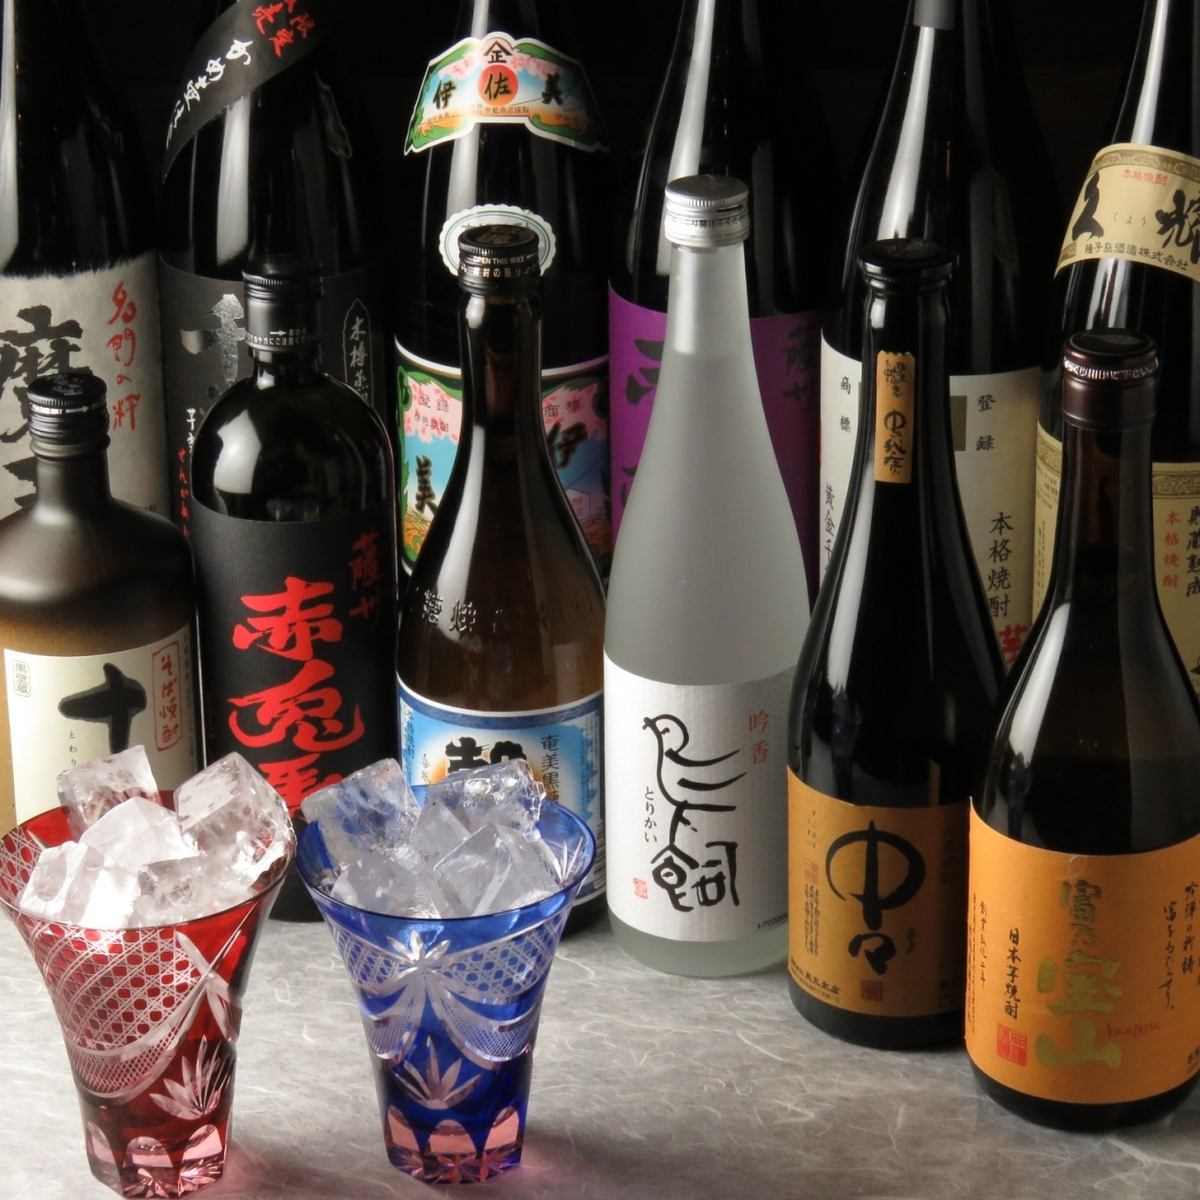 엄선 된 일본 술, 소주와 신선한 해산물을 즐기세요! 별실 완비!